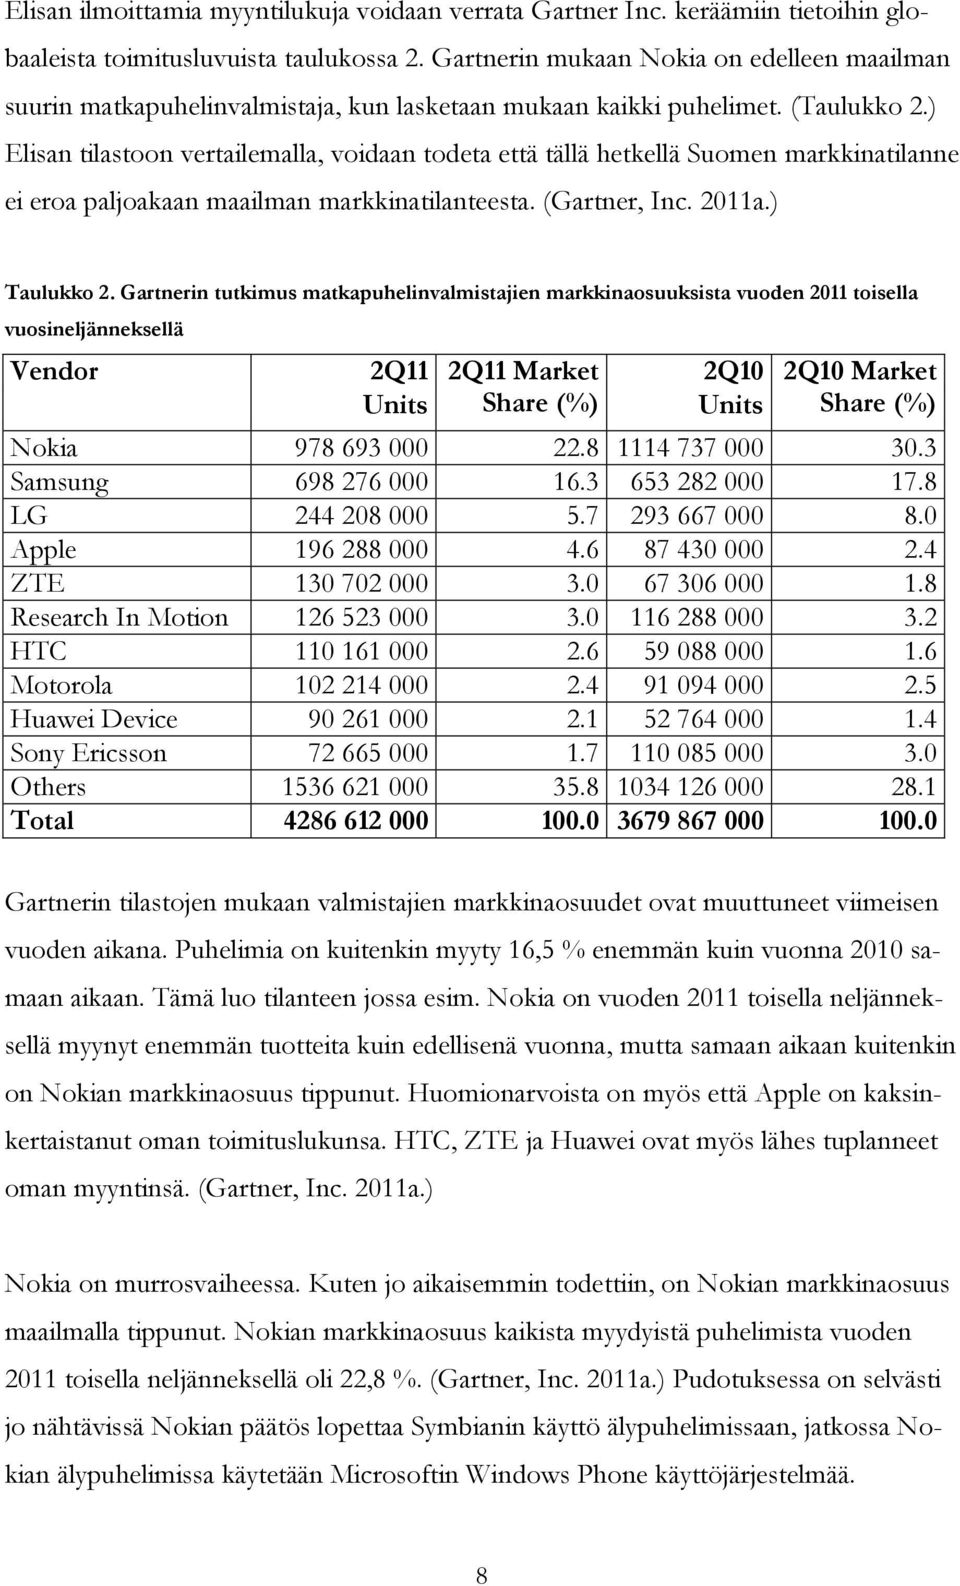 ) Elisan tilastoon vertailemalla, voidaan todeta että tällä hetkellä Suomen markkinatilanne ei eroa paljoakaan maailman markkinatilanteesta. (Gartner, Inc. 2011a.) Taulukko 2.